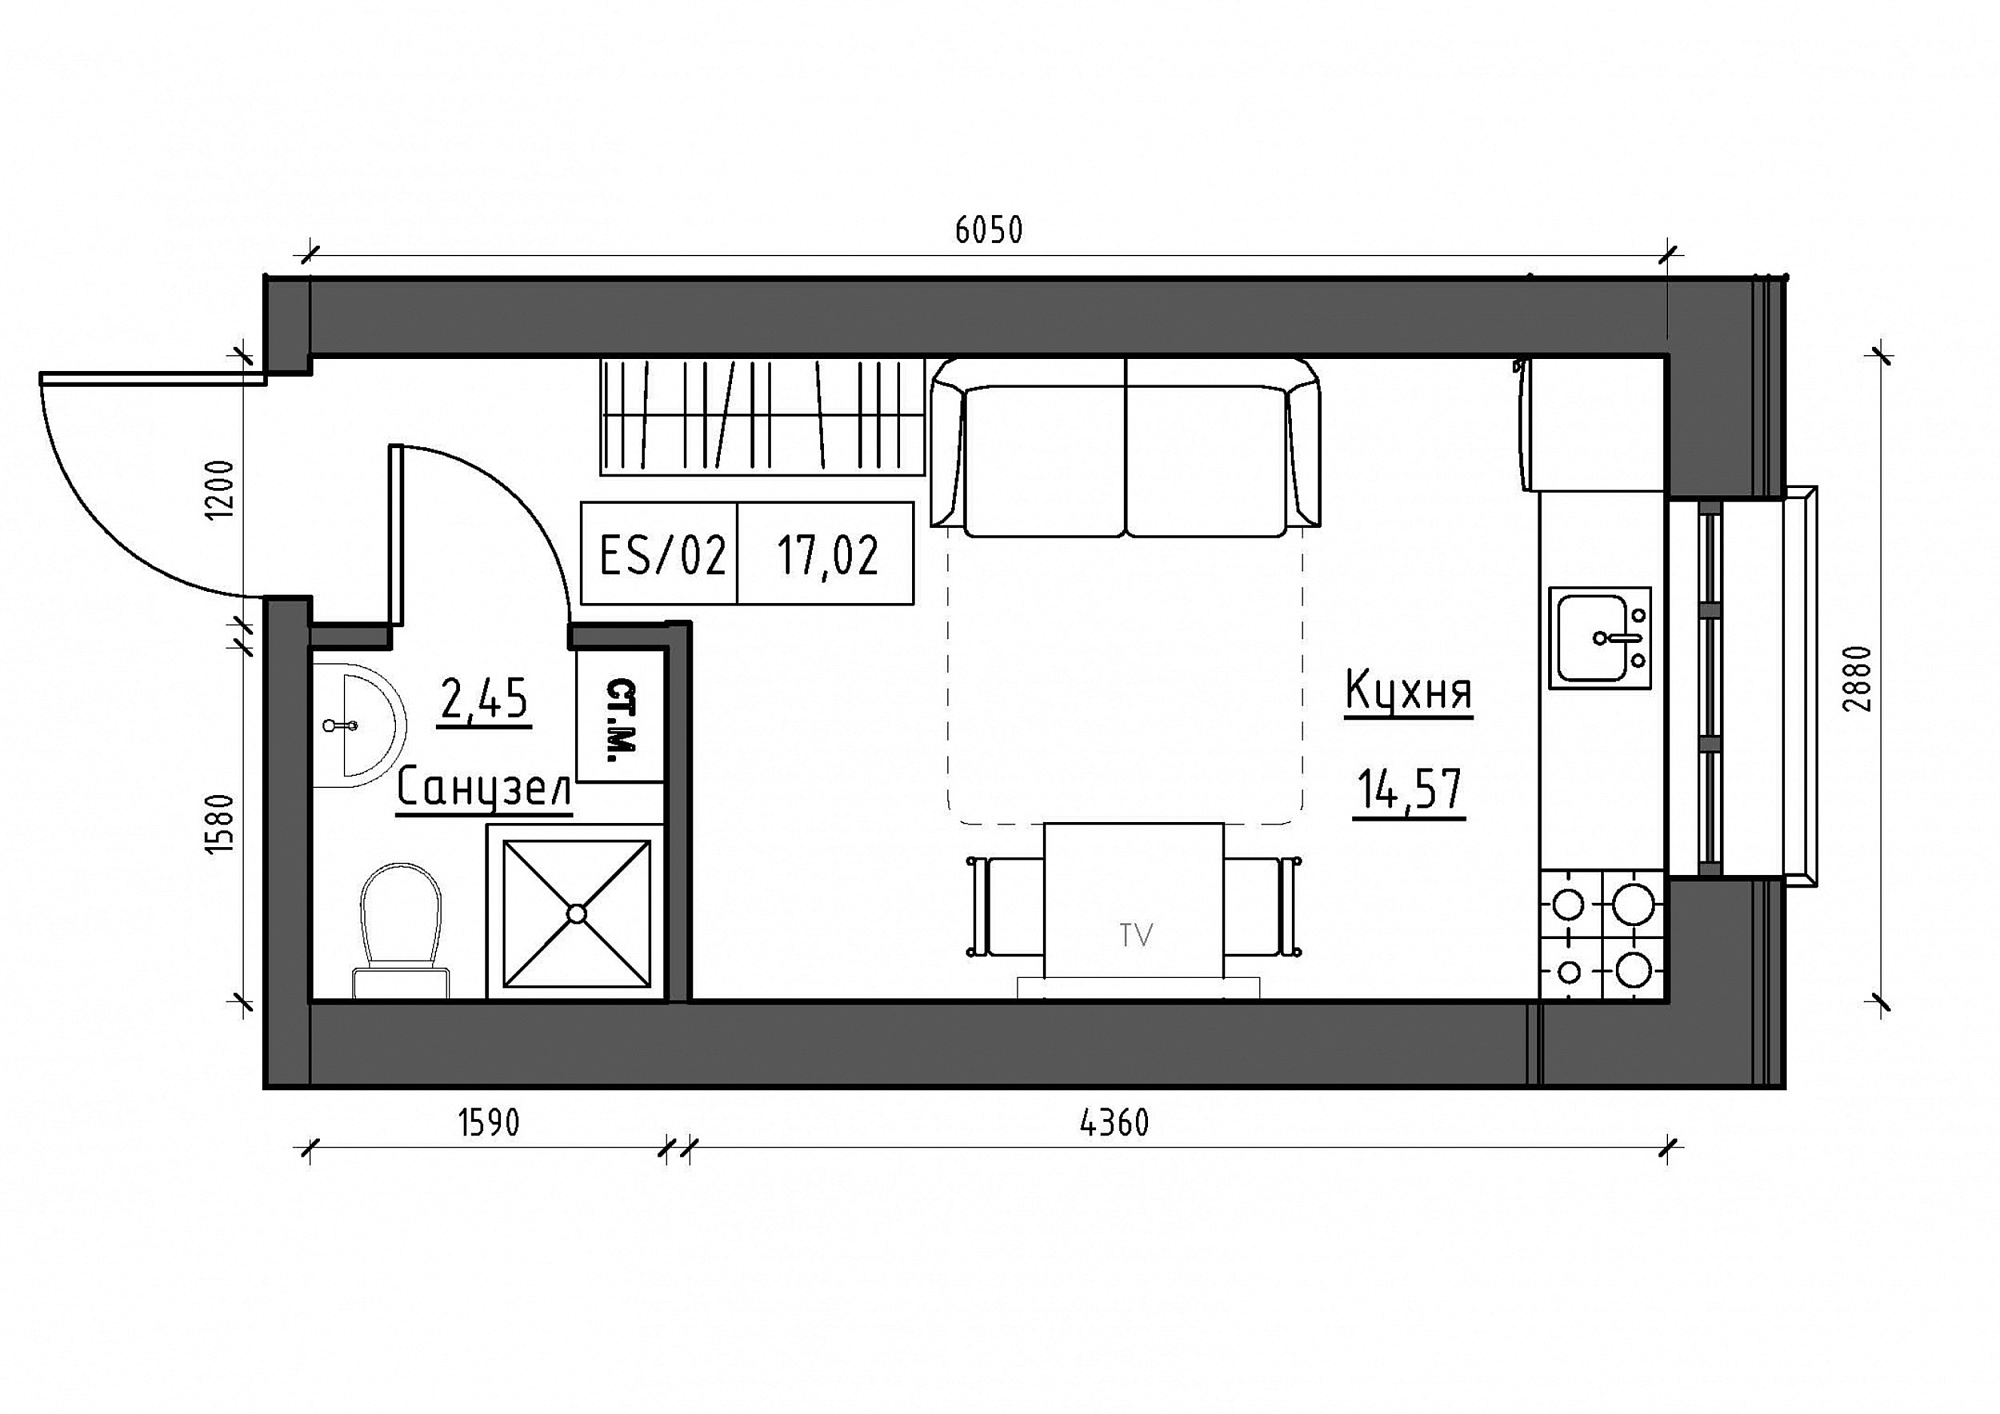 Планування Smart-квартира площею 17.02м2, KS-012-03/0014.